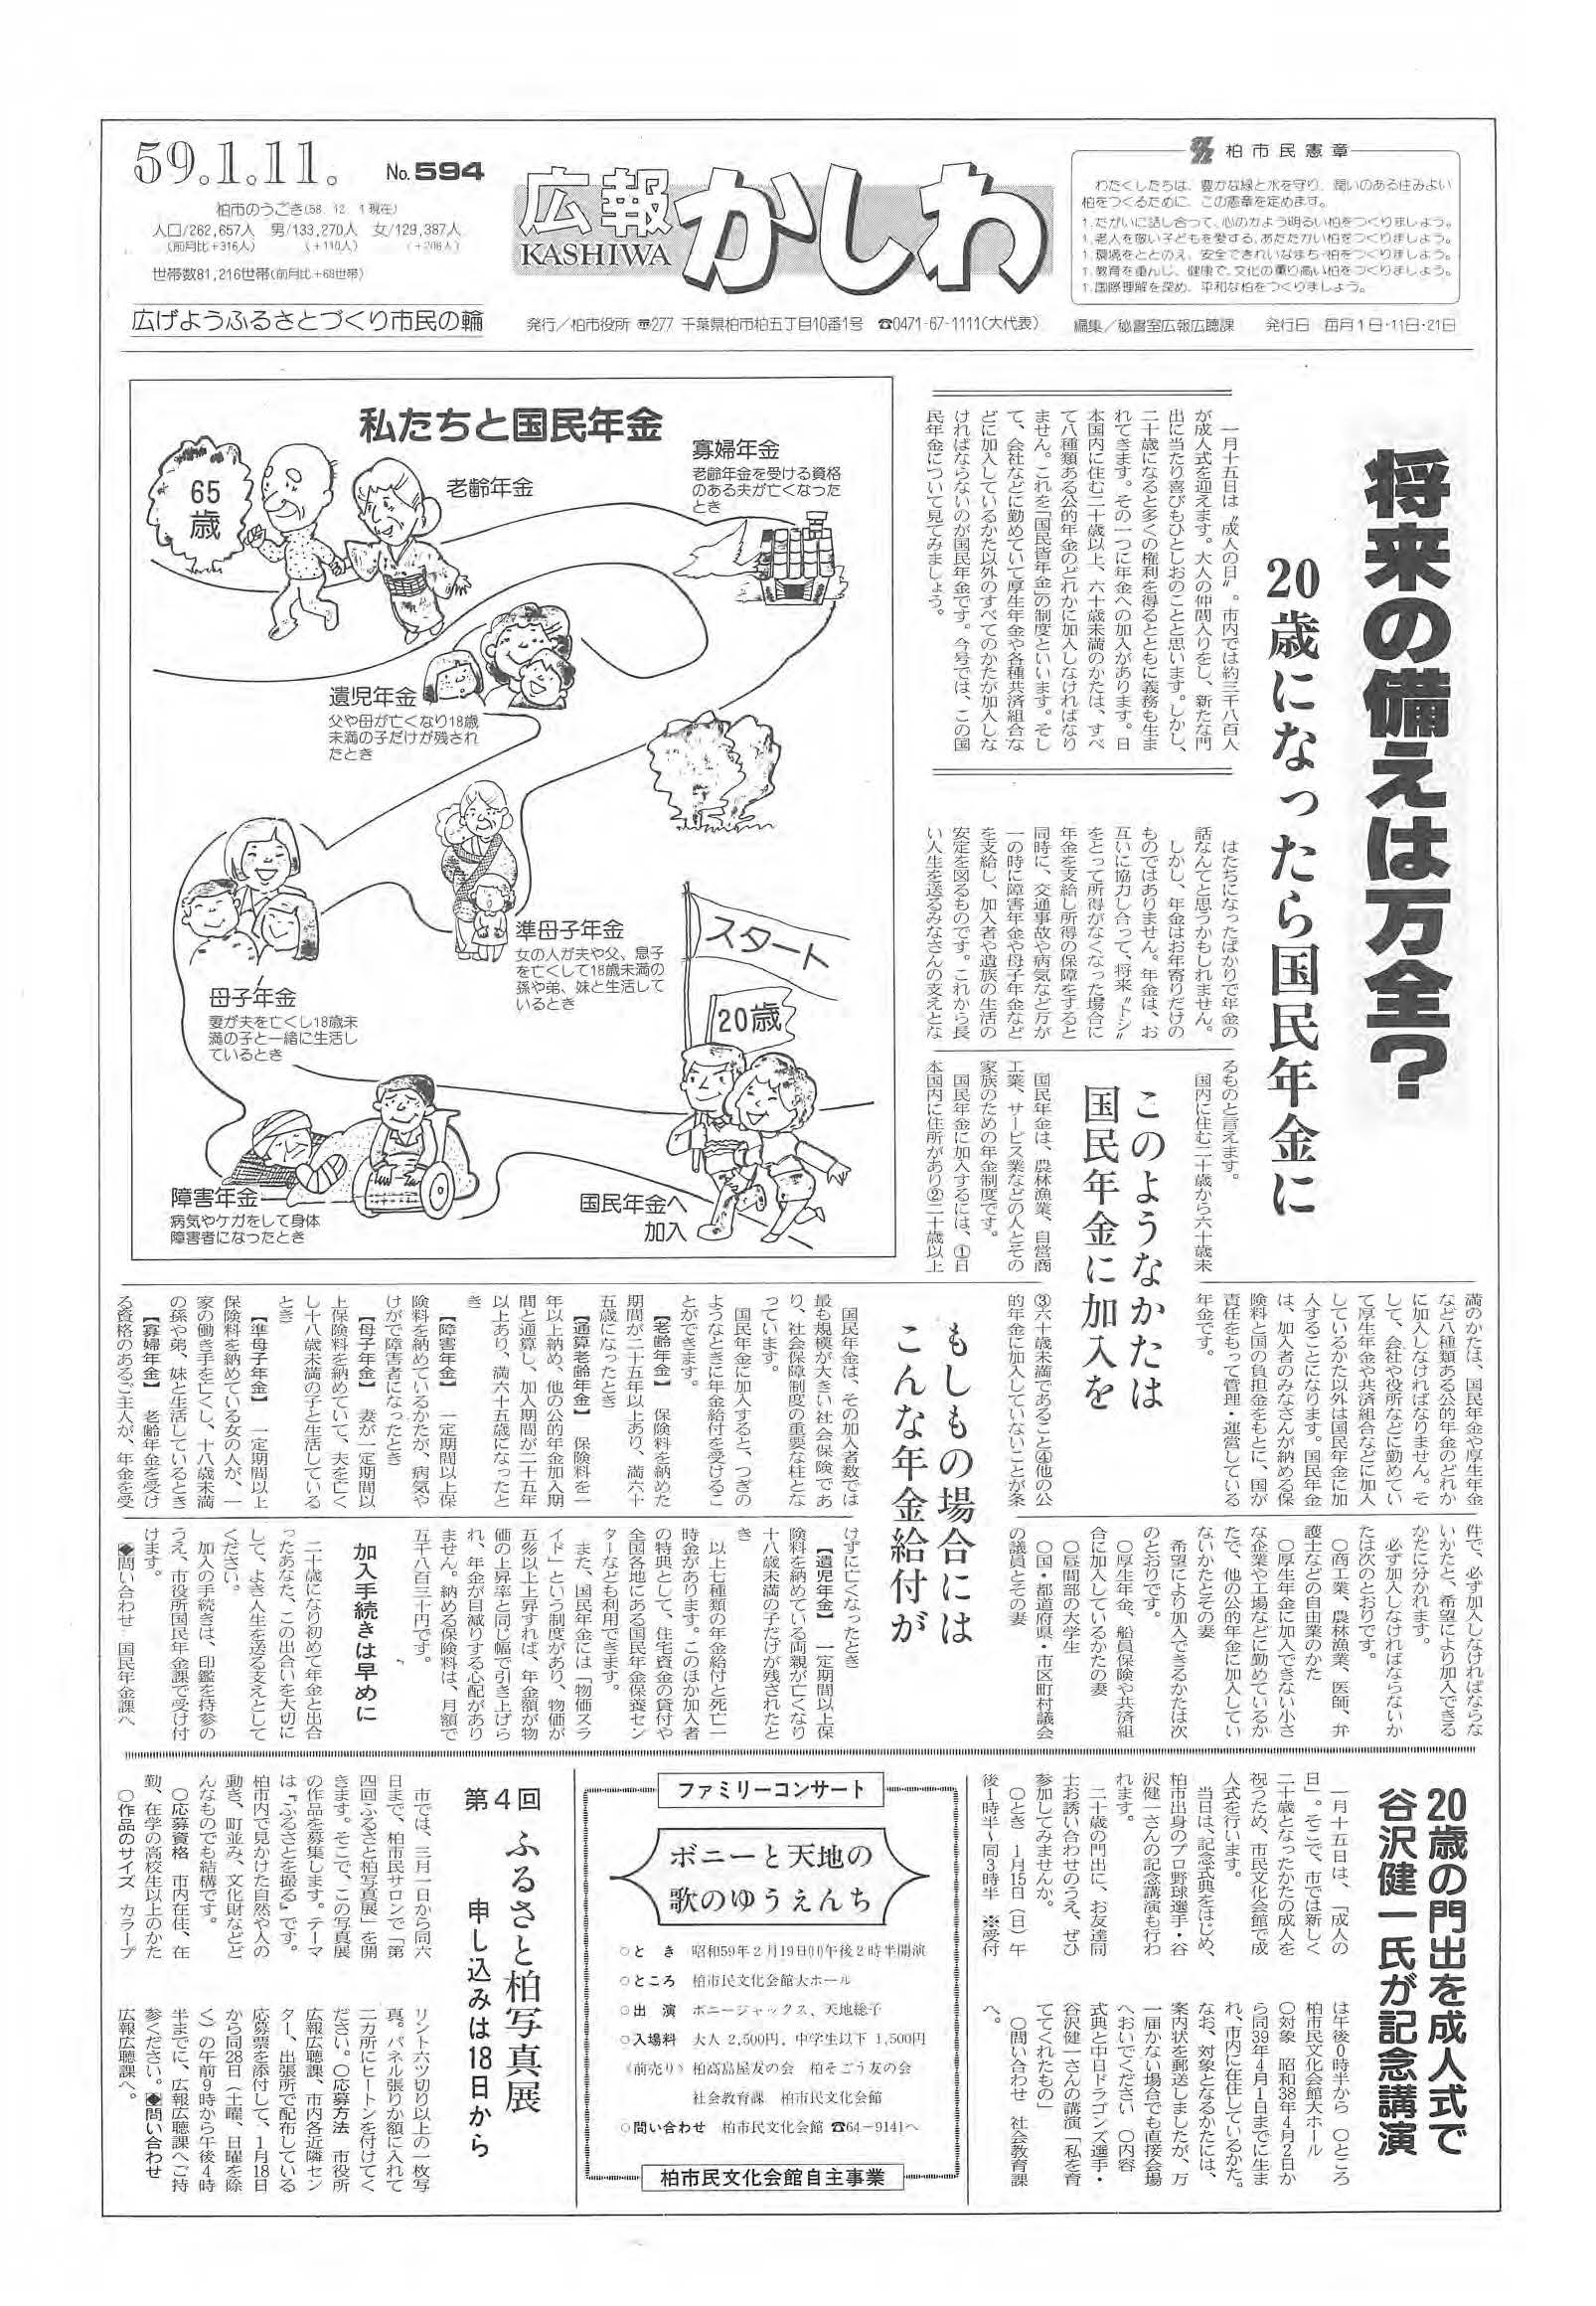 広報かしわ　昭和59年1月11日発行　594号